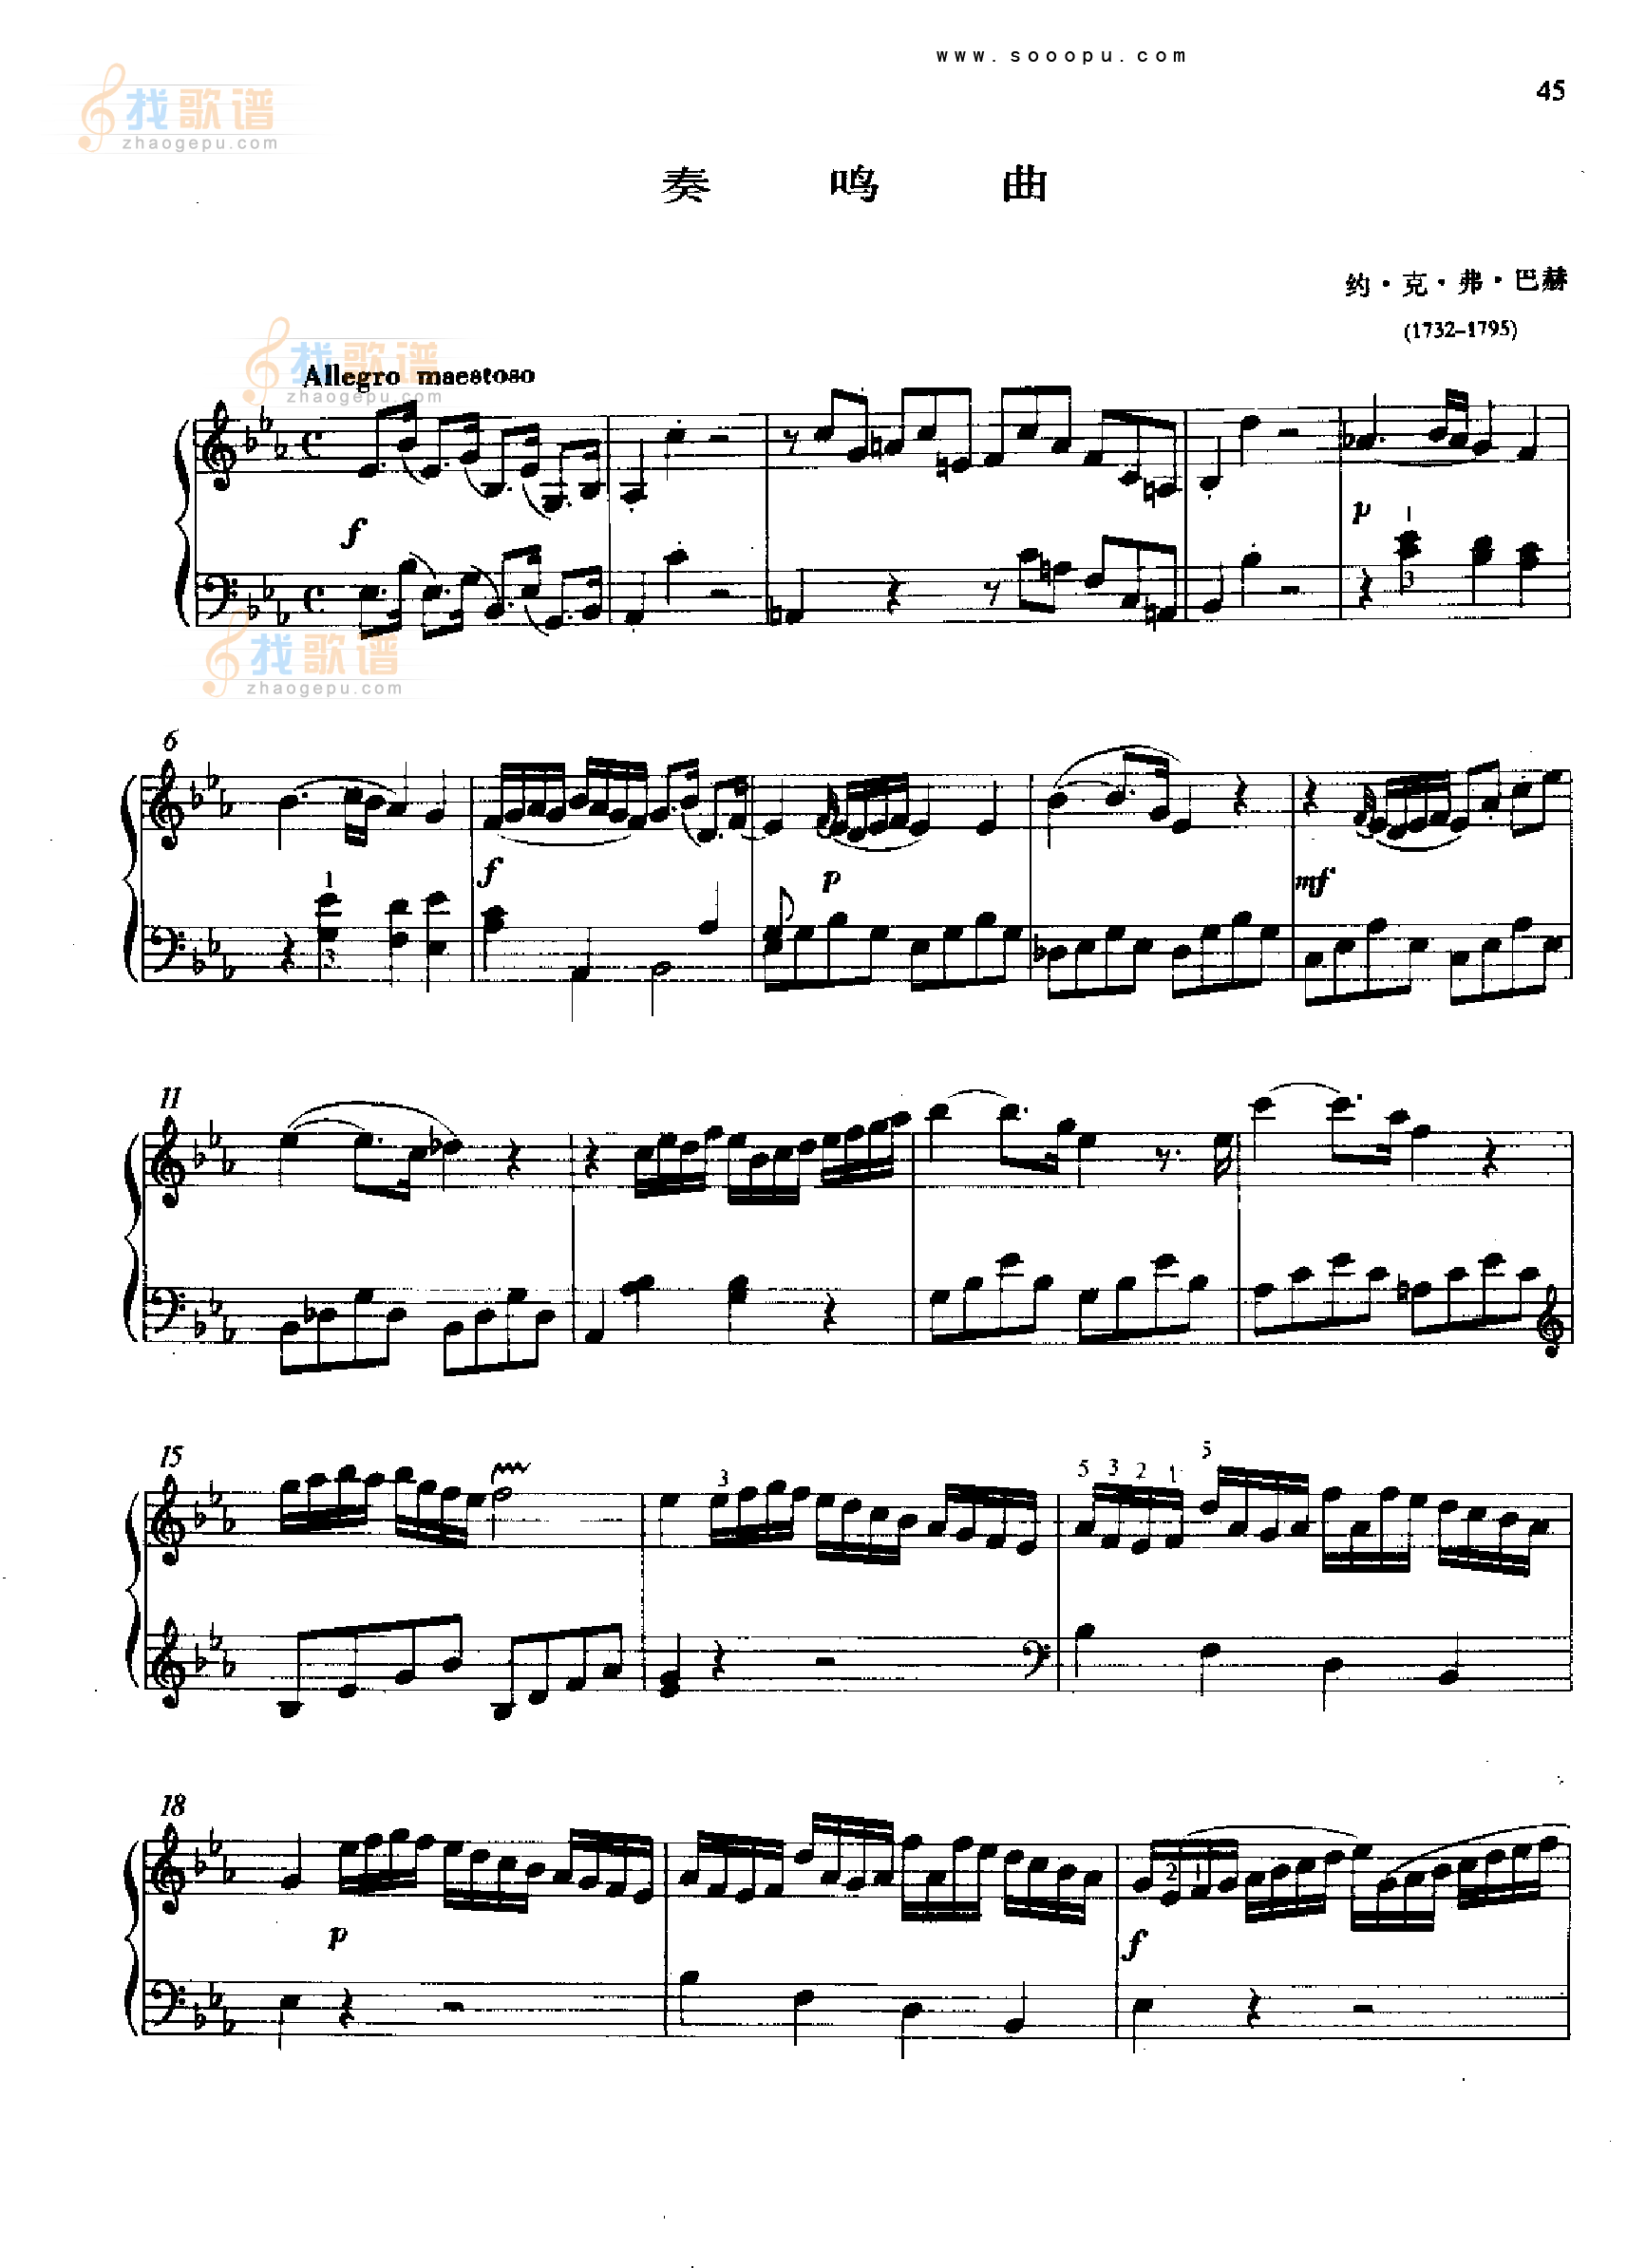 奏鸣曲一1776年出版 海顿 钢琴谱 五线谱